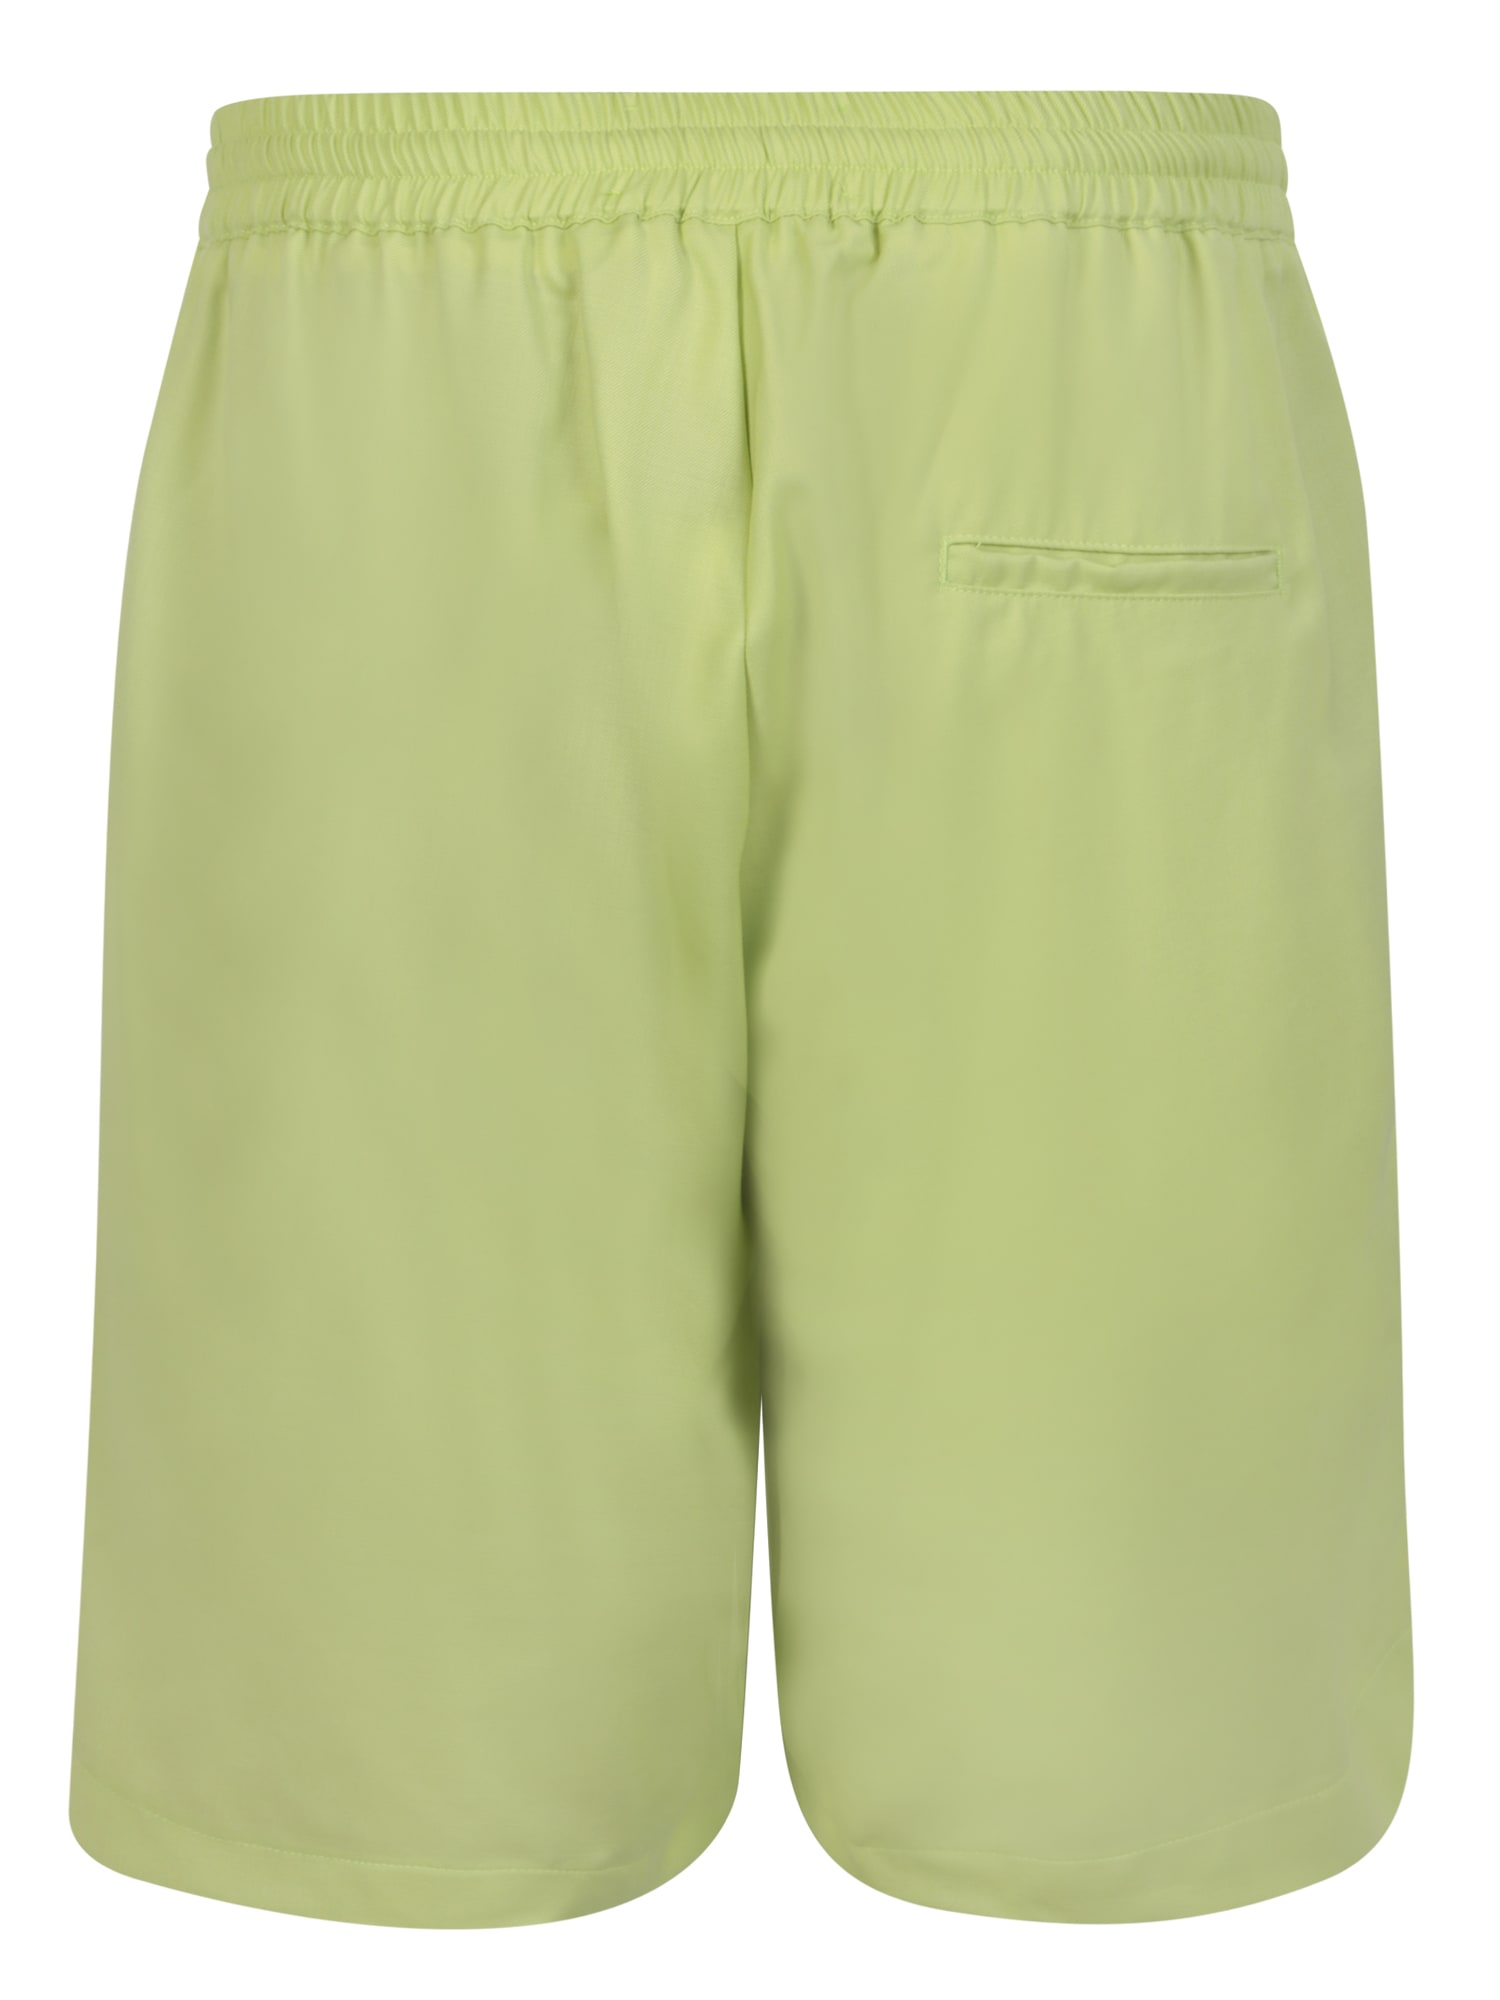 Shop Bonsai Lime Green Shorts